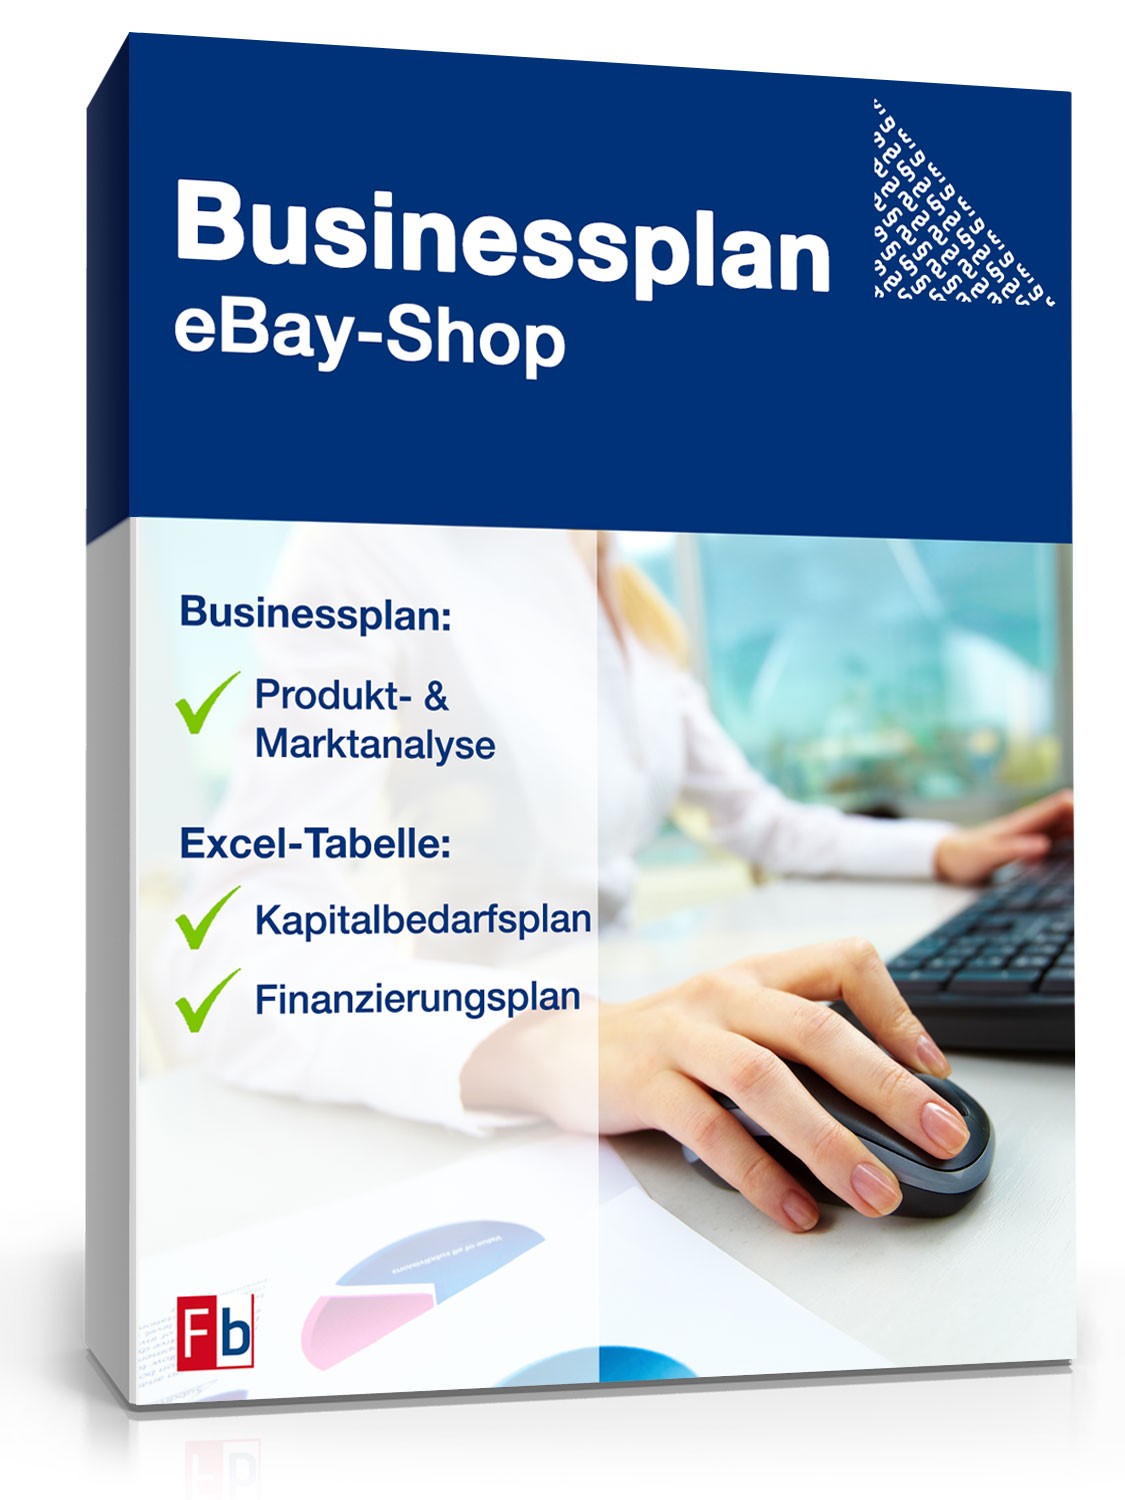 Hauptbild des Produkts: Businessplan eBay-Shop